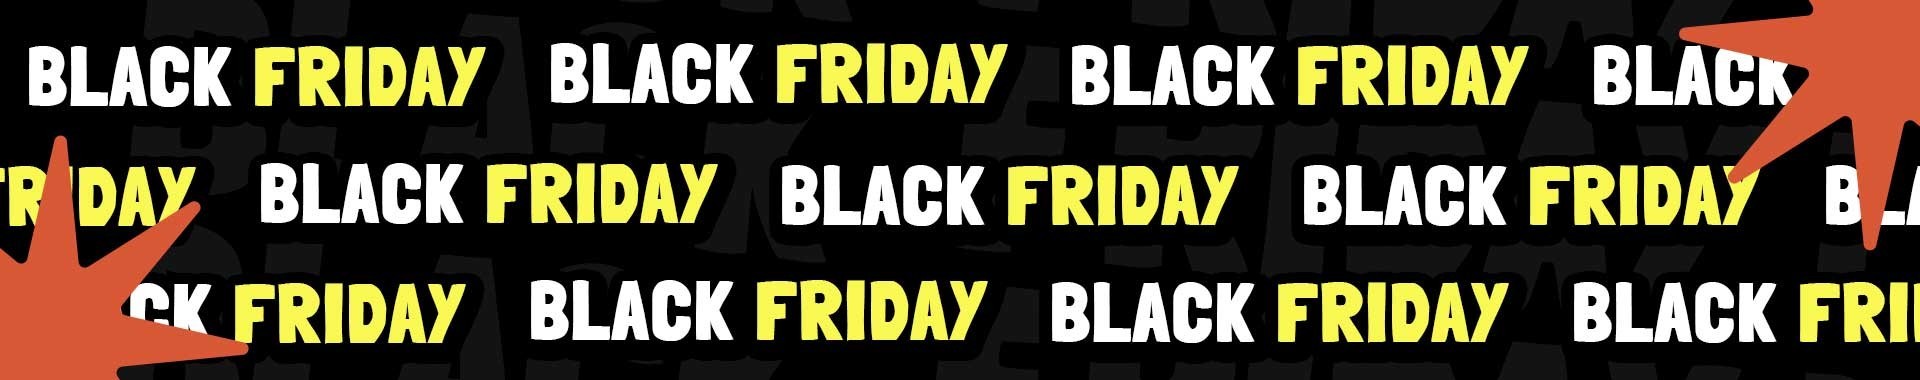 Black Friday en Comptoir Nautique I Los mejores precios del año